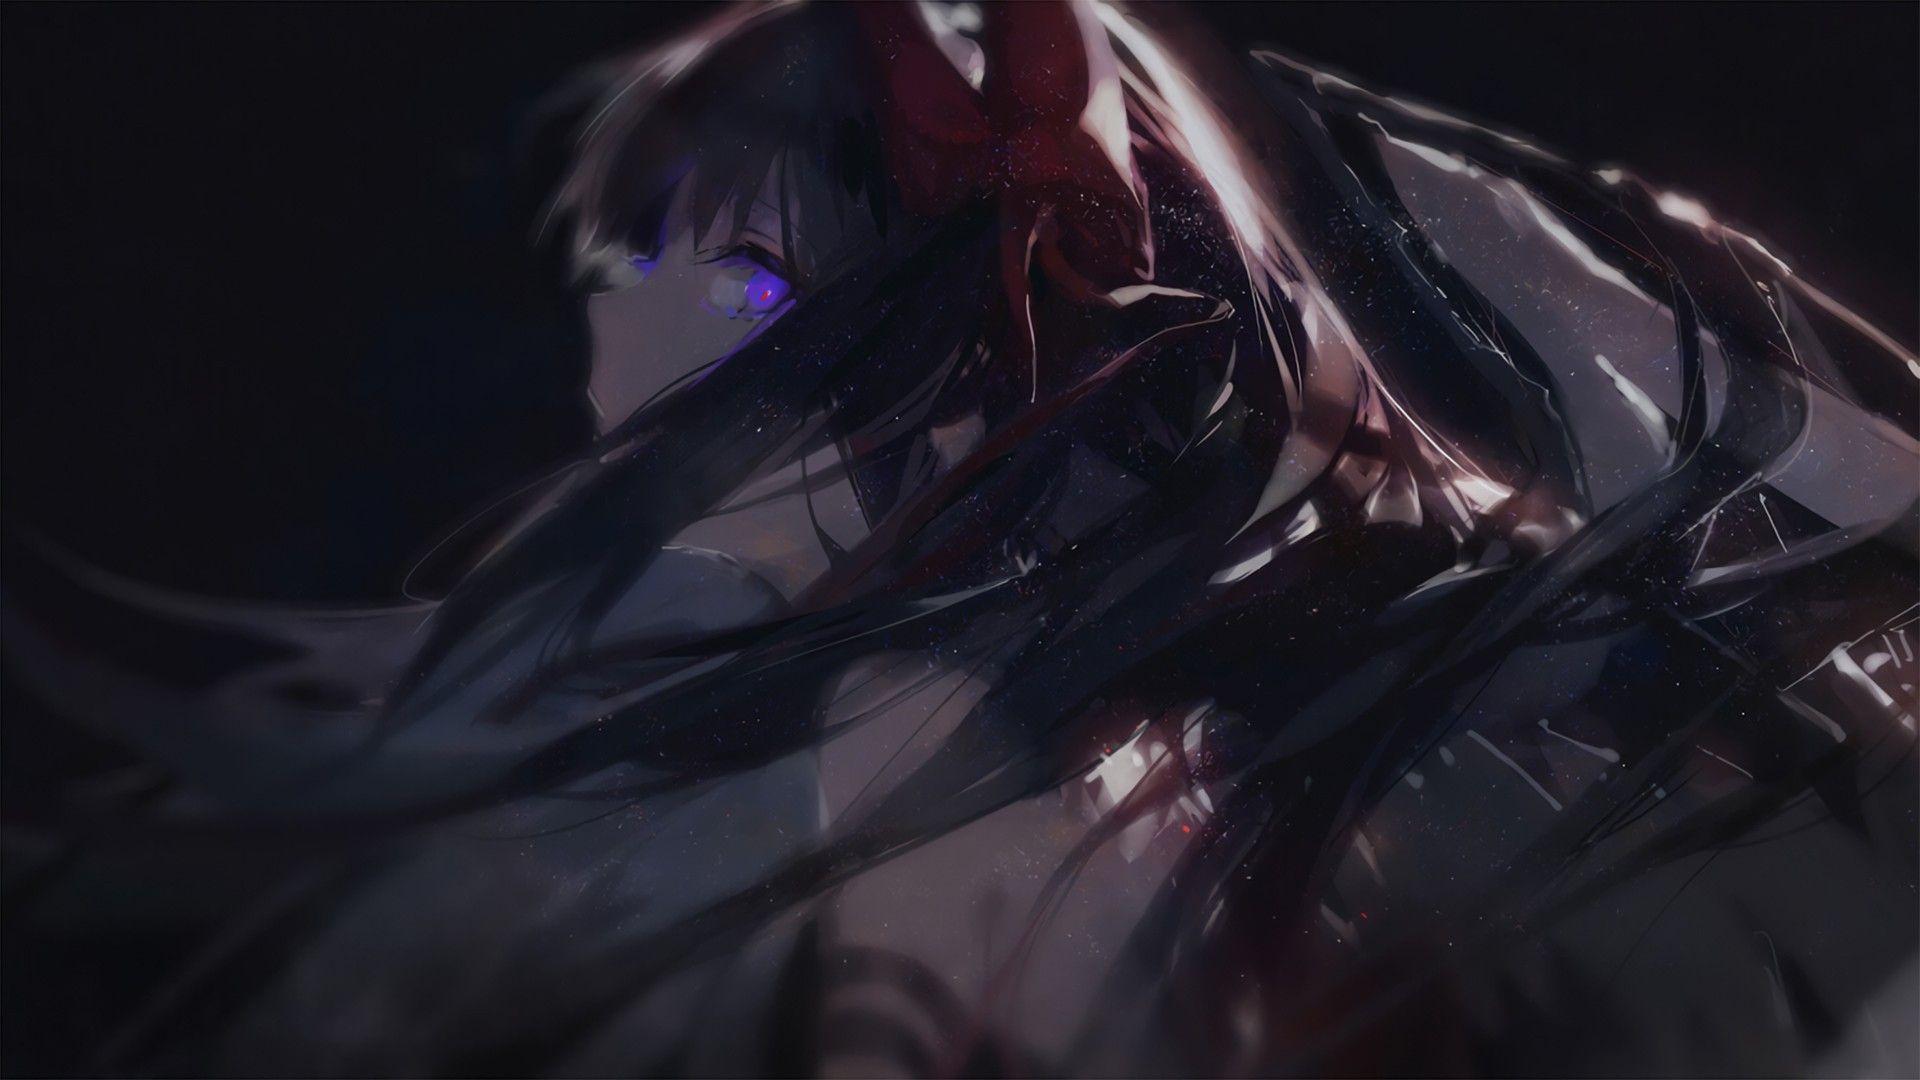 Dark-anime-girl-wallpaper-hd-dark-anime-wallpaper- by Niel36 on